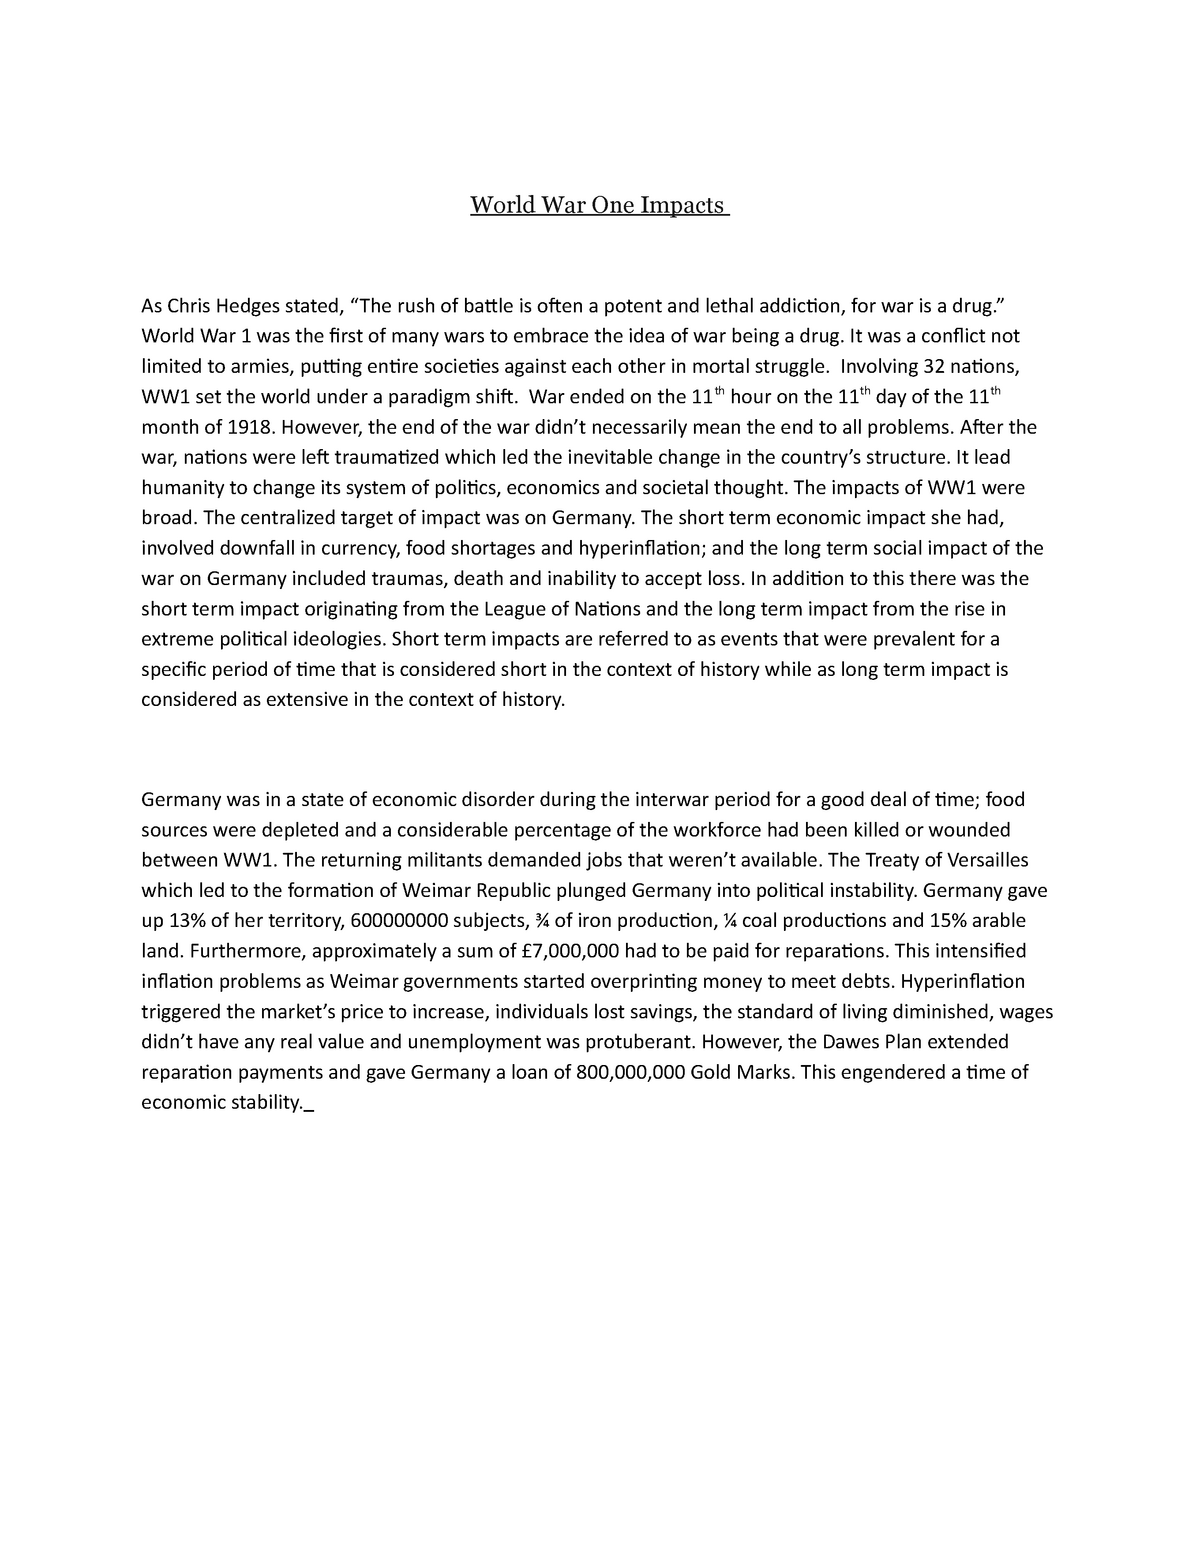 first world war essay questions